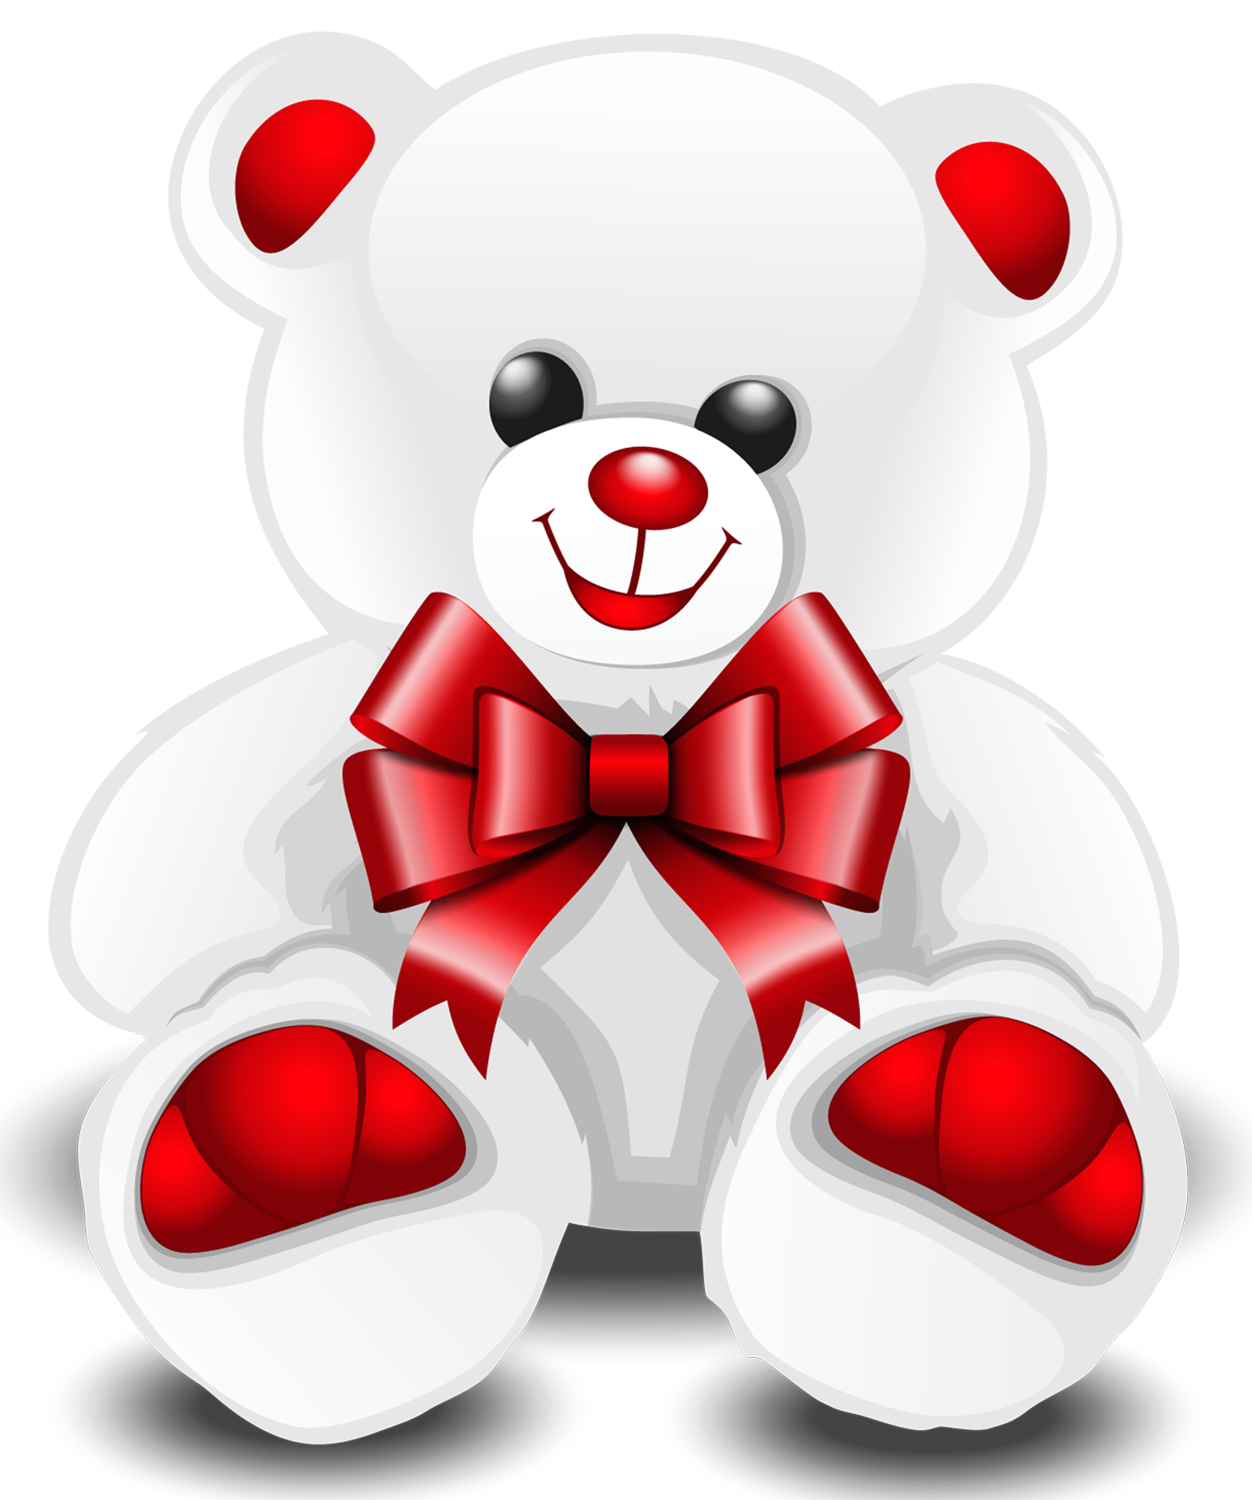 clipart of teddy bear